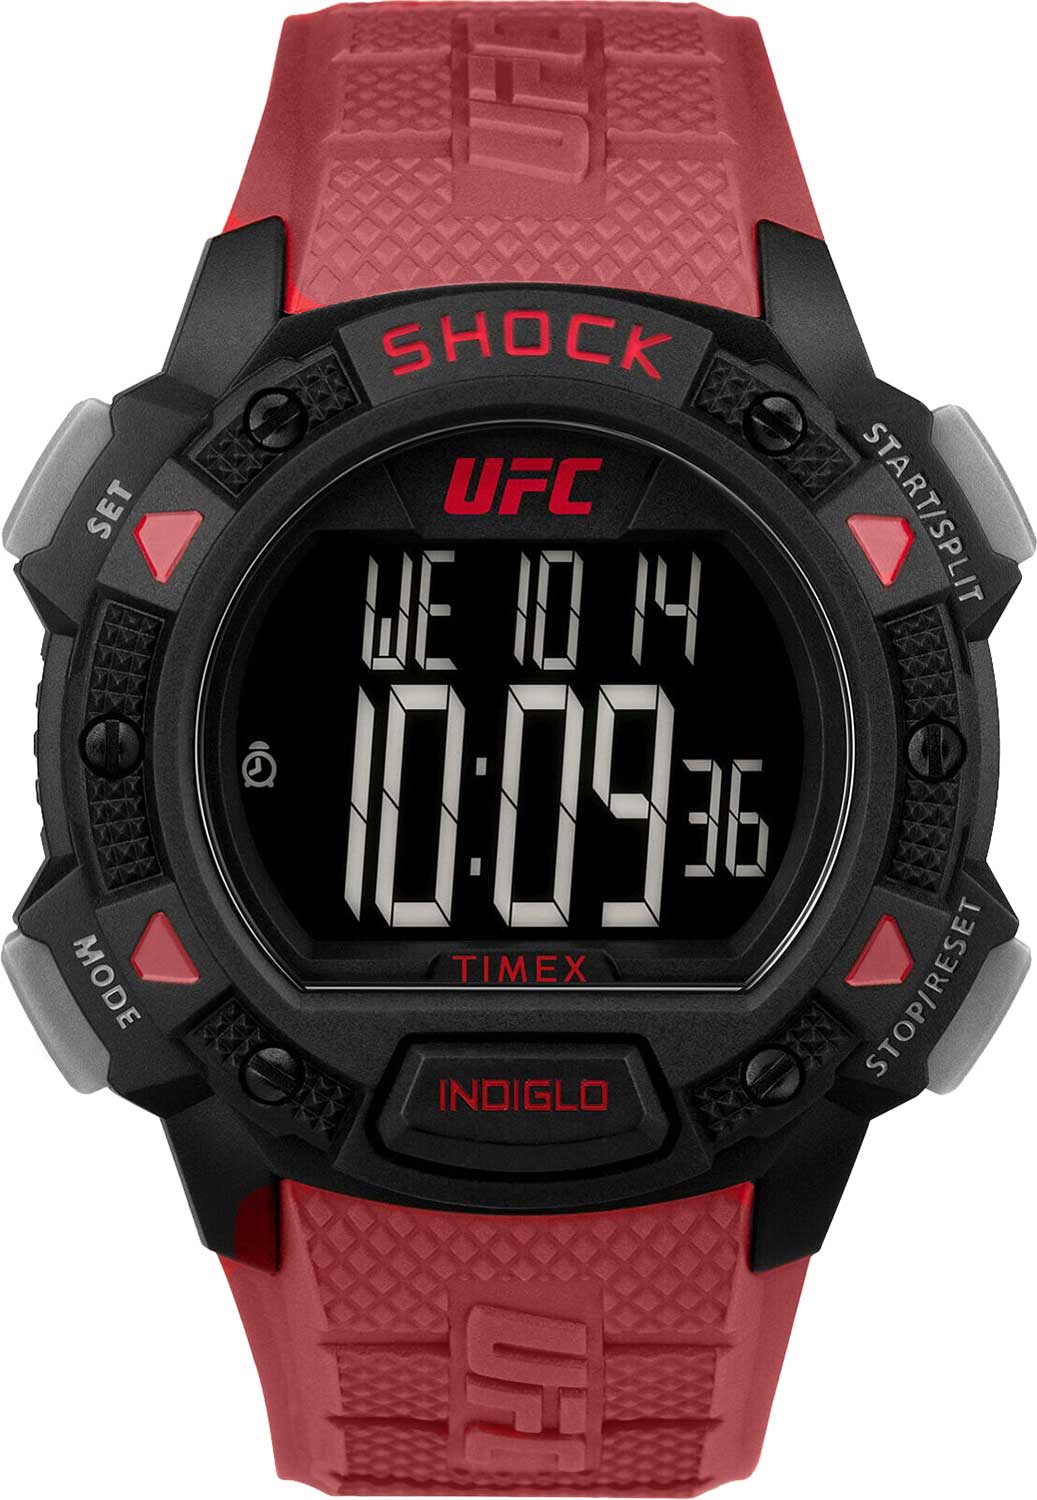   Timex UFC TW4B27600  